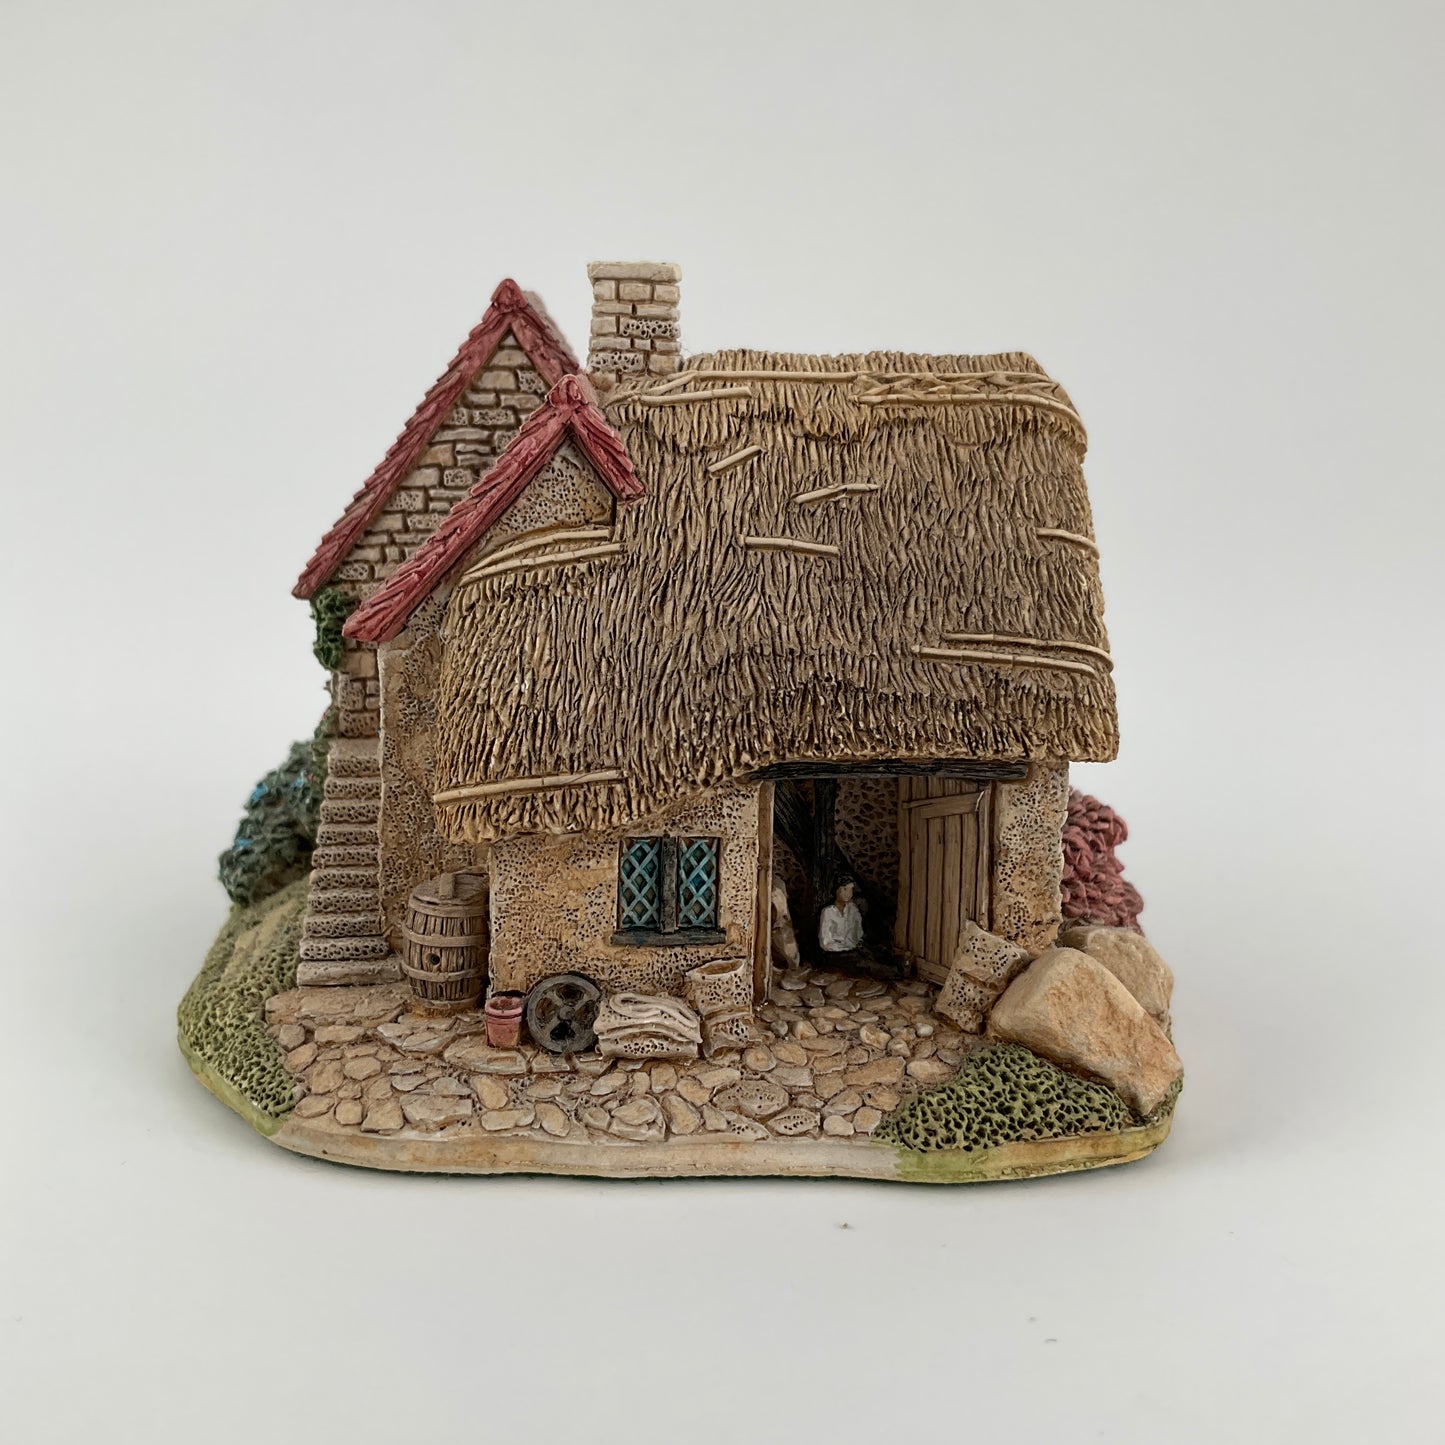 Lilliput Lane Model - "Waterside Mill"